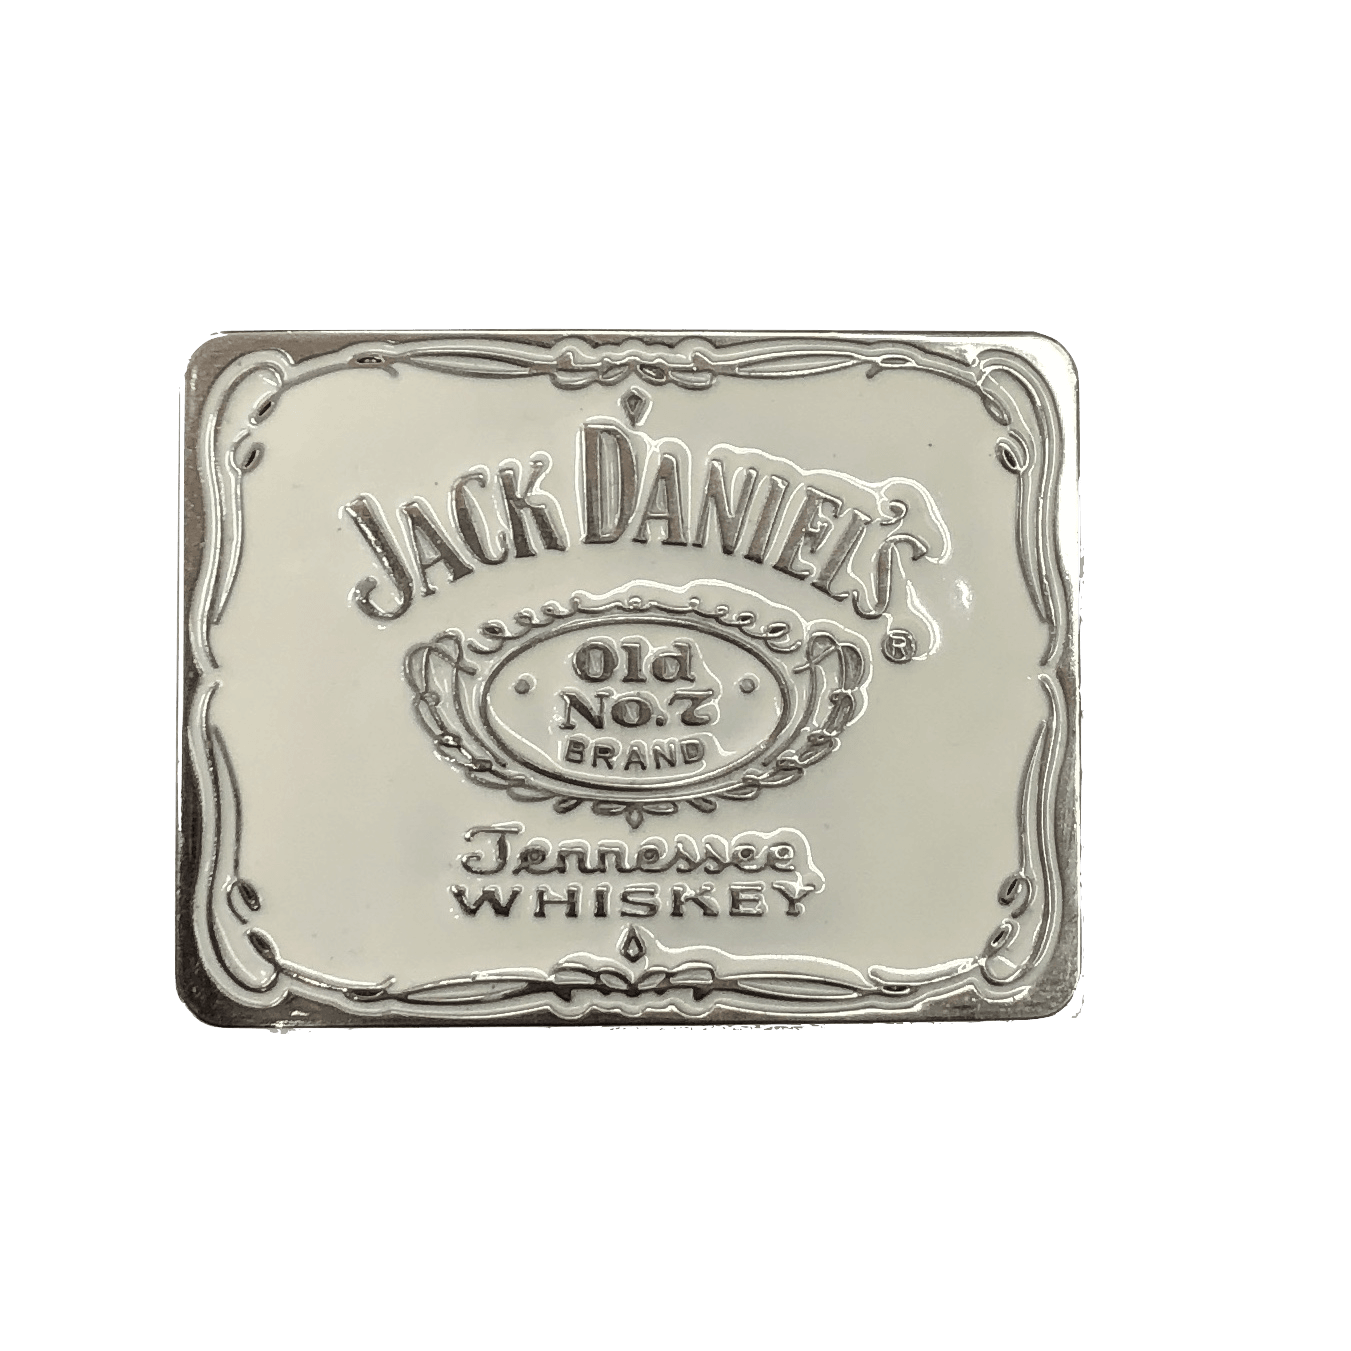 35 Jack Daniels Label Font - Labels Database 2020